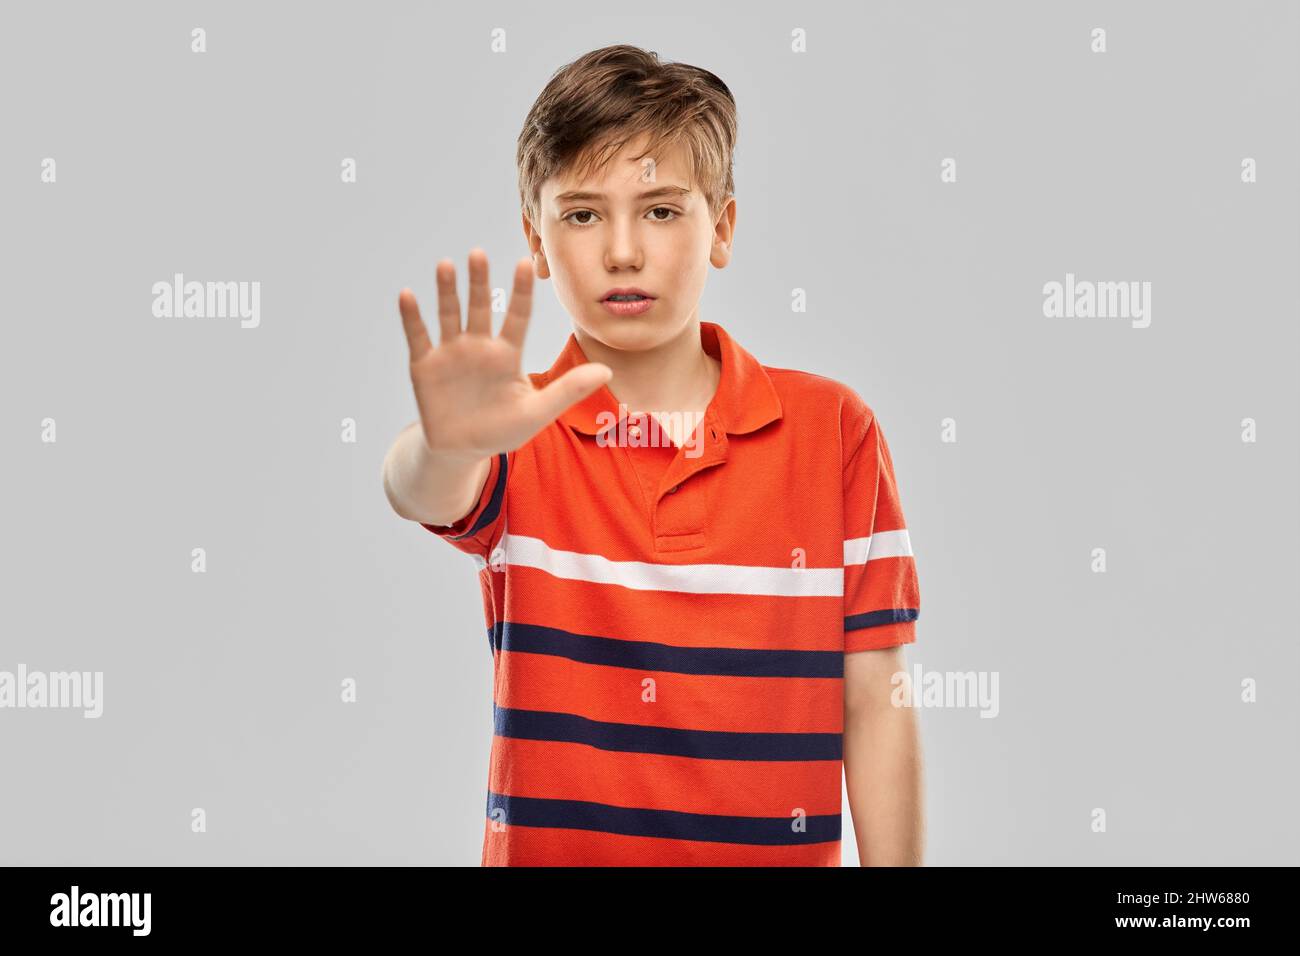 portrait d'un garçon faisant un geste d'arrêt Banque D'Images